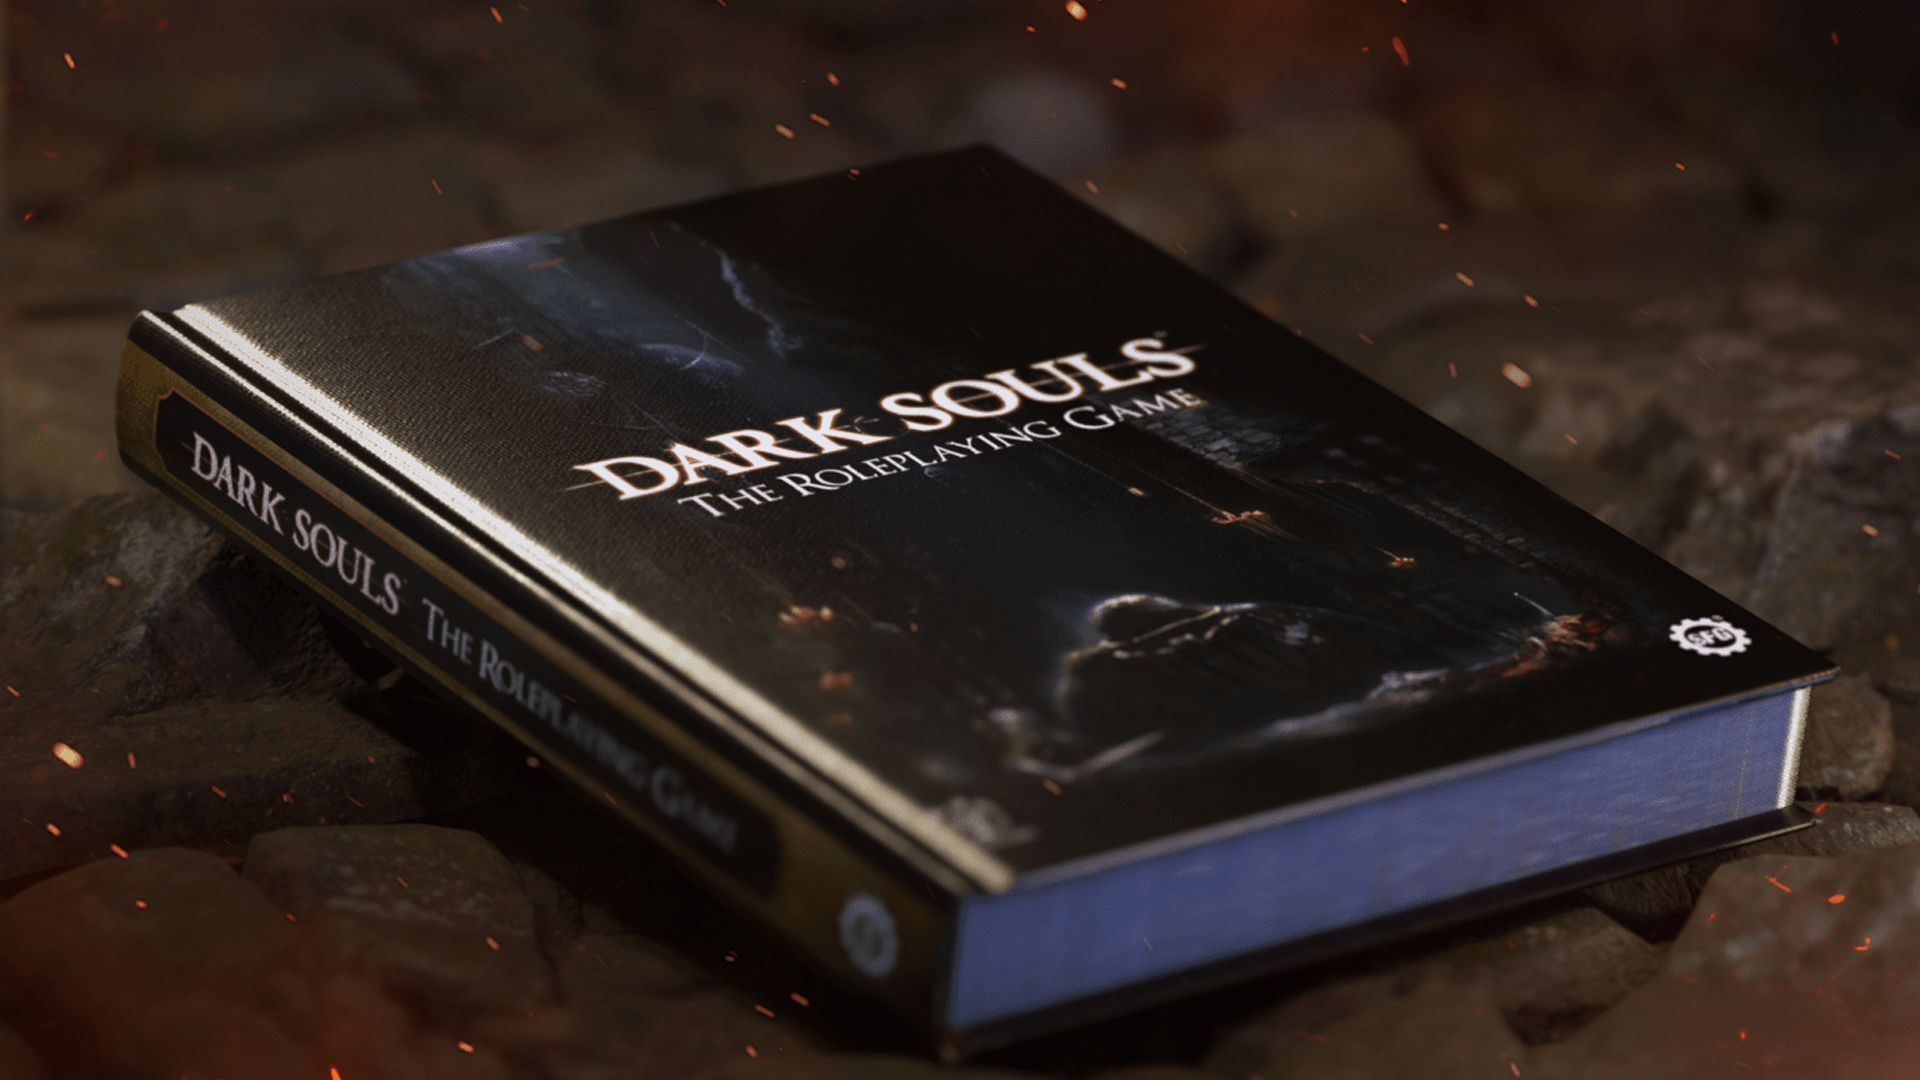 Dark Souls RPG book image